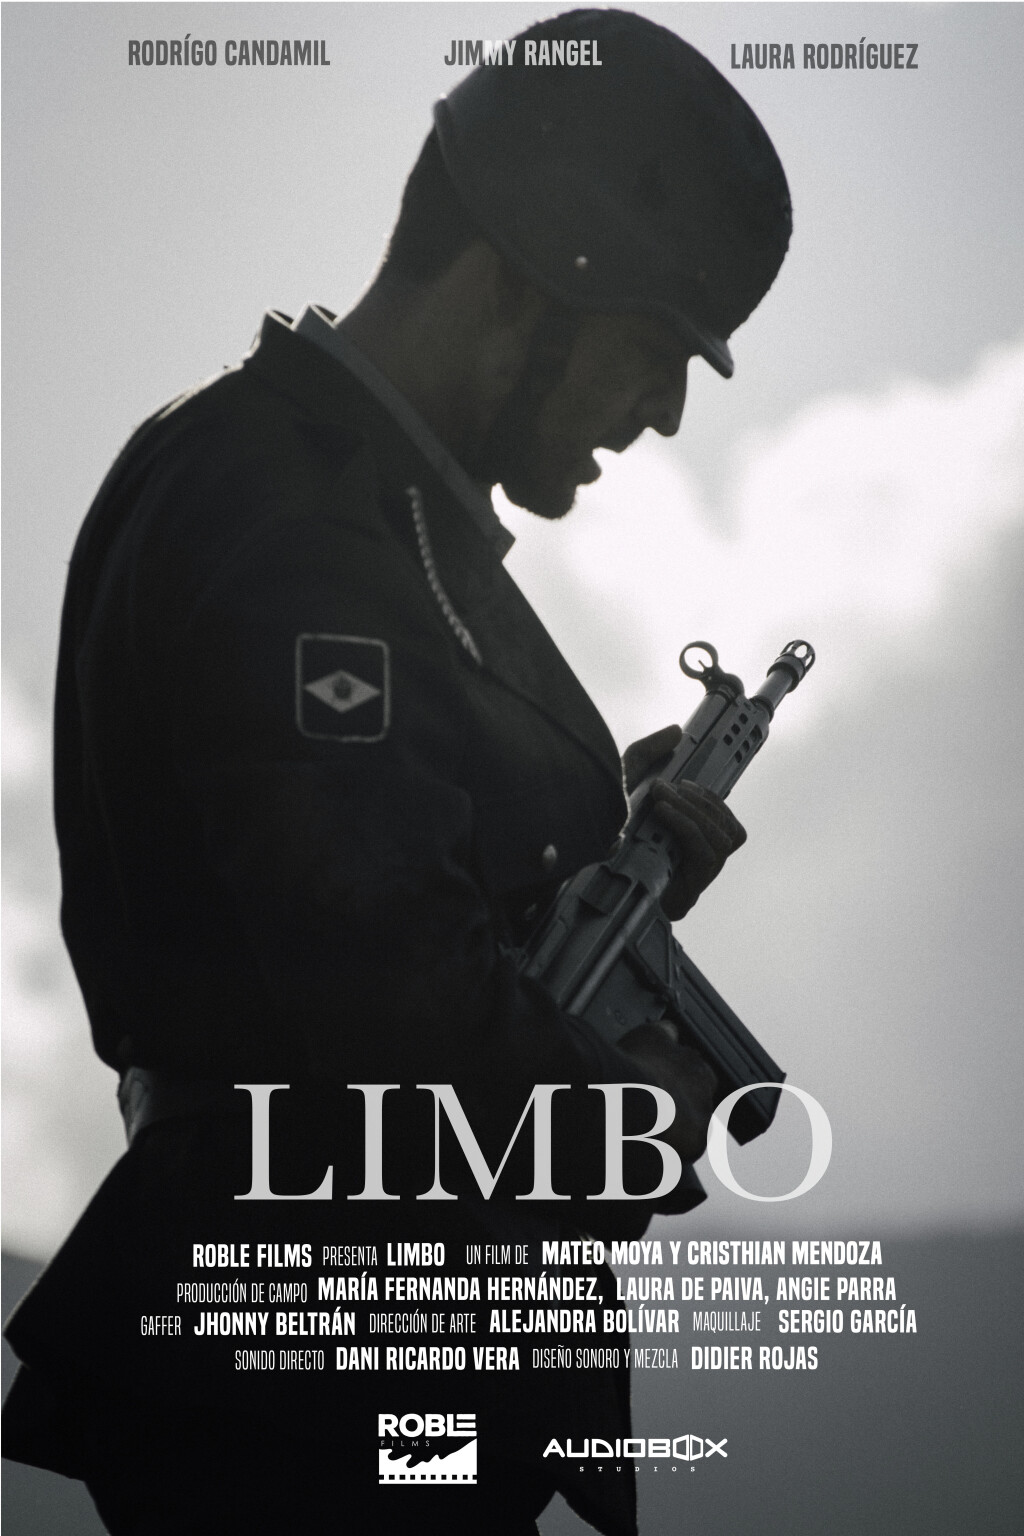 Filmposter for LIMBO